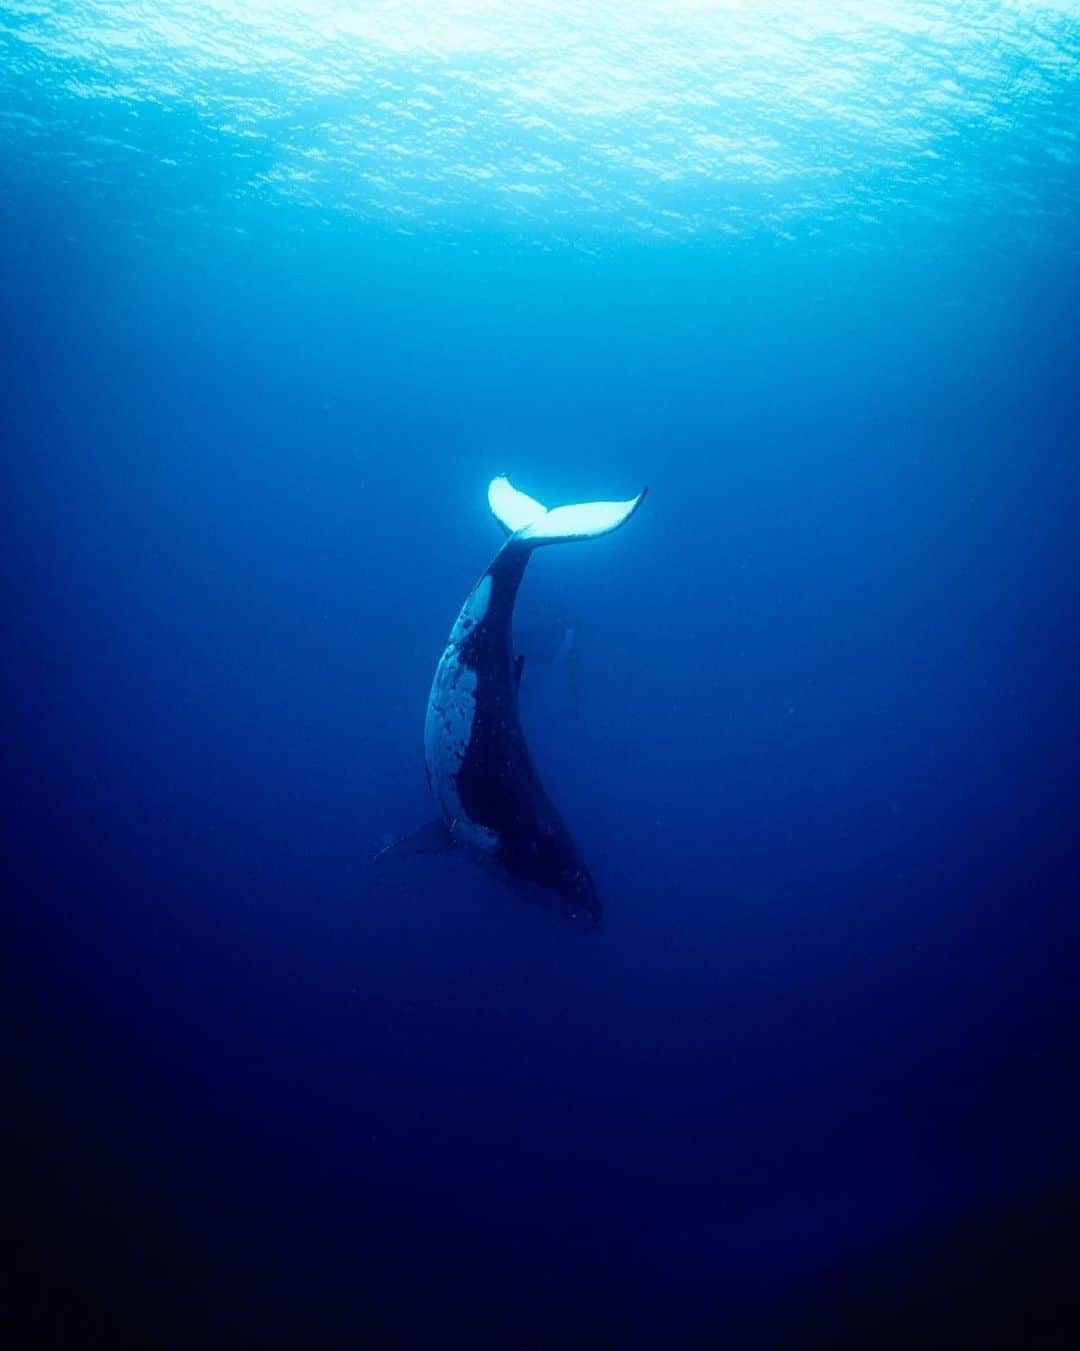 篠宮龍三のインスタグラム：「トンガホエールスイムツアー2019  今年は透明度が良いので、引いた絵も撮ってみました。白いテールの内側が綺麗でした。  トンガに来てかれこれもう2週間が過ぎました。  ツアーも残すところあと一週間。  明日からどんなクジラたちに会えるかな。  #whale #humpbackwhale  #whaleswim #freediving  #tonga #ホエールスイム #フリーダイビング #トンガ #sony #a7r3 #Nauticamhousings #underwaterphotography」